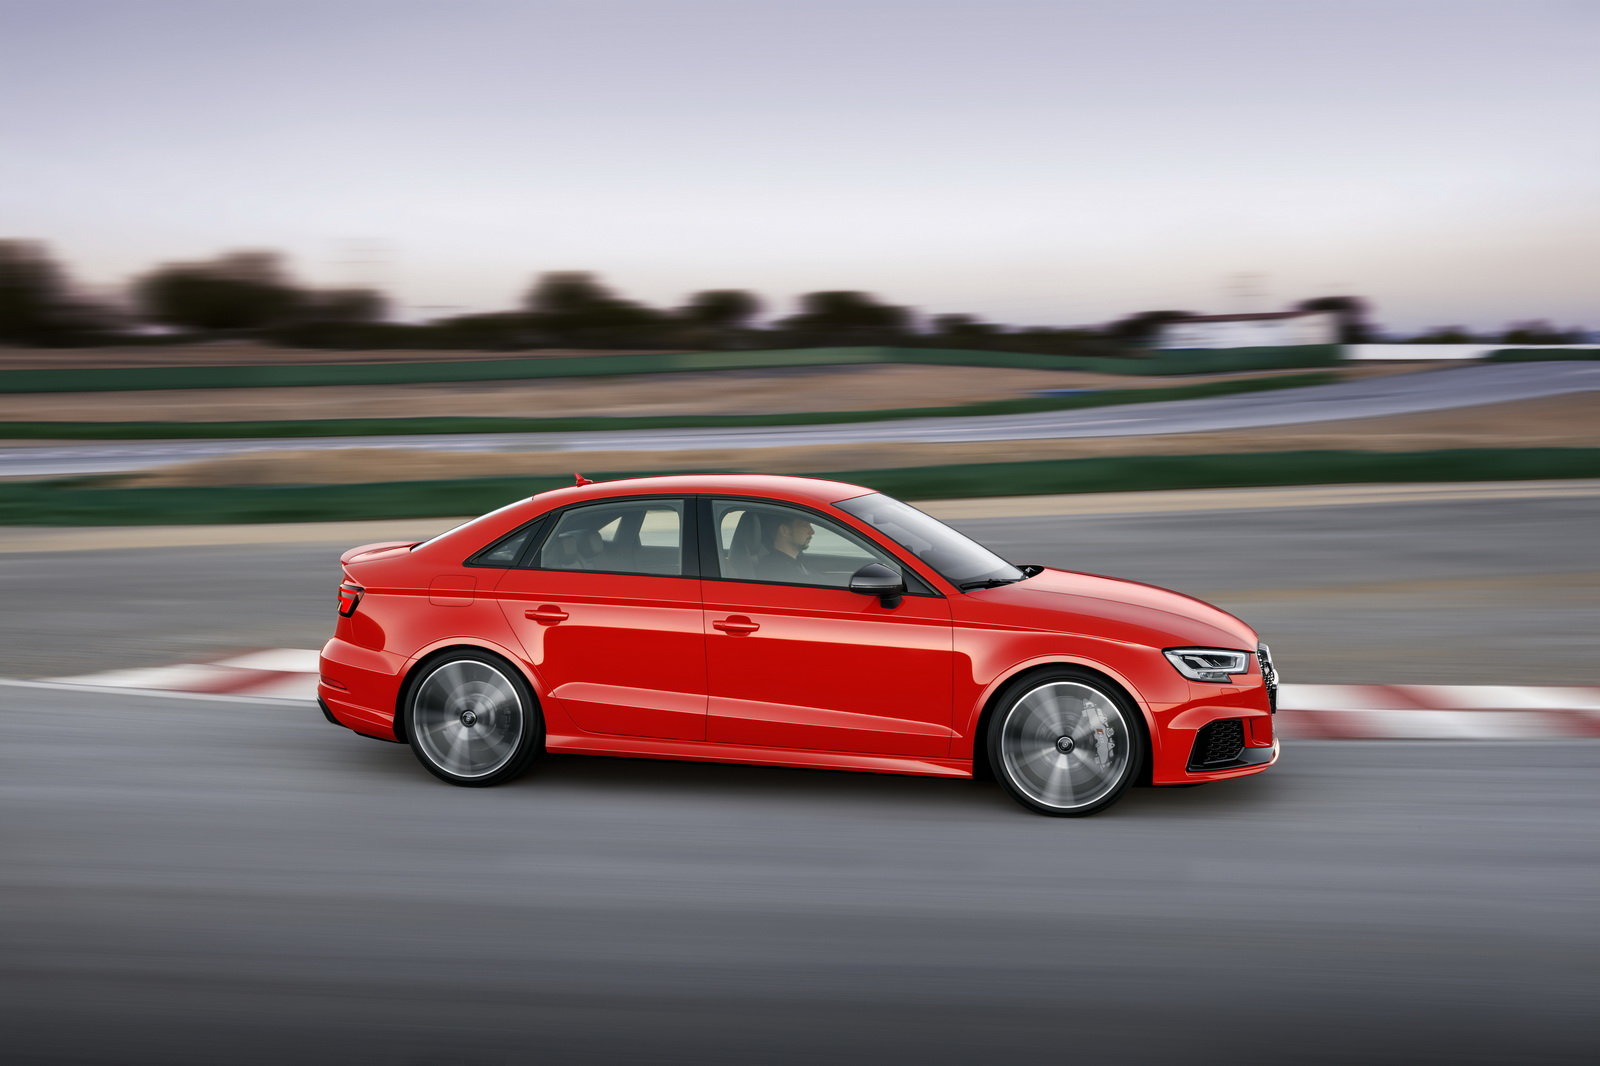 Audi RS3 Sedan ukazuje pětiválec 2.5 TSI o výkonu 400 koní!